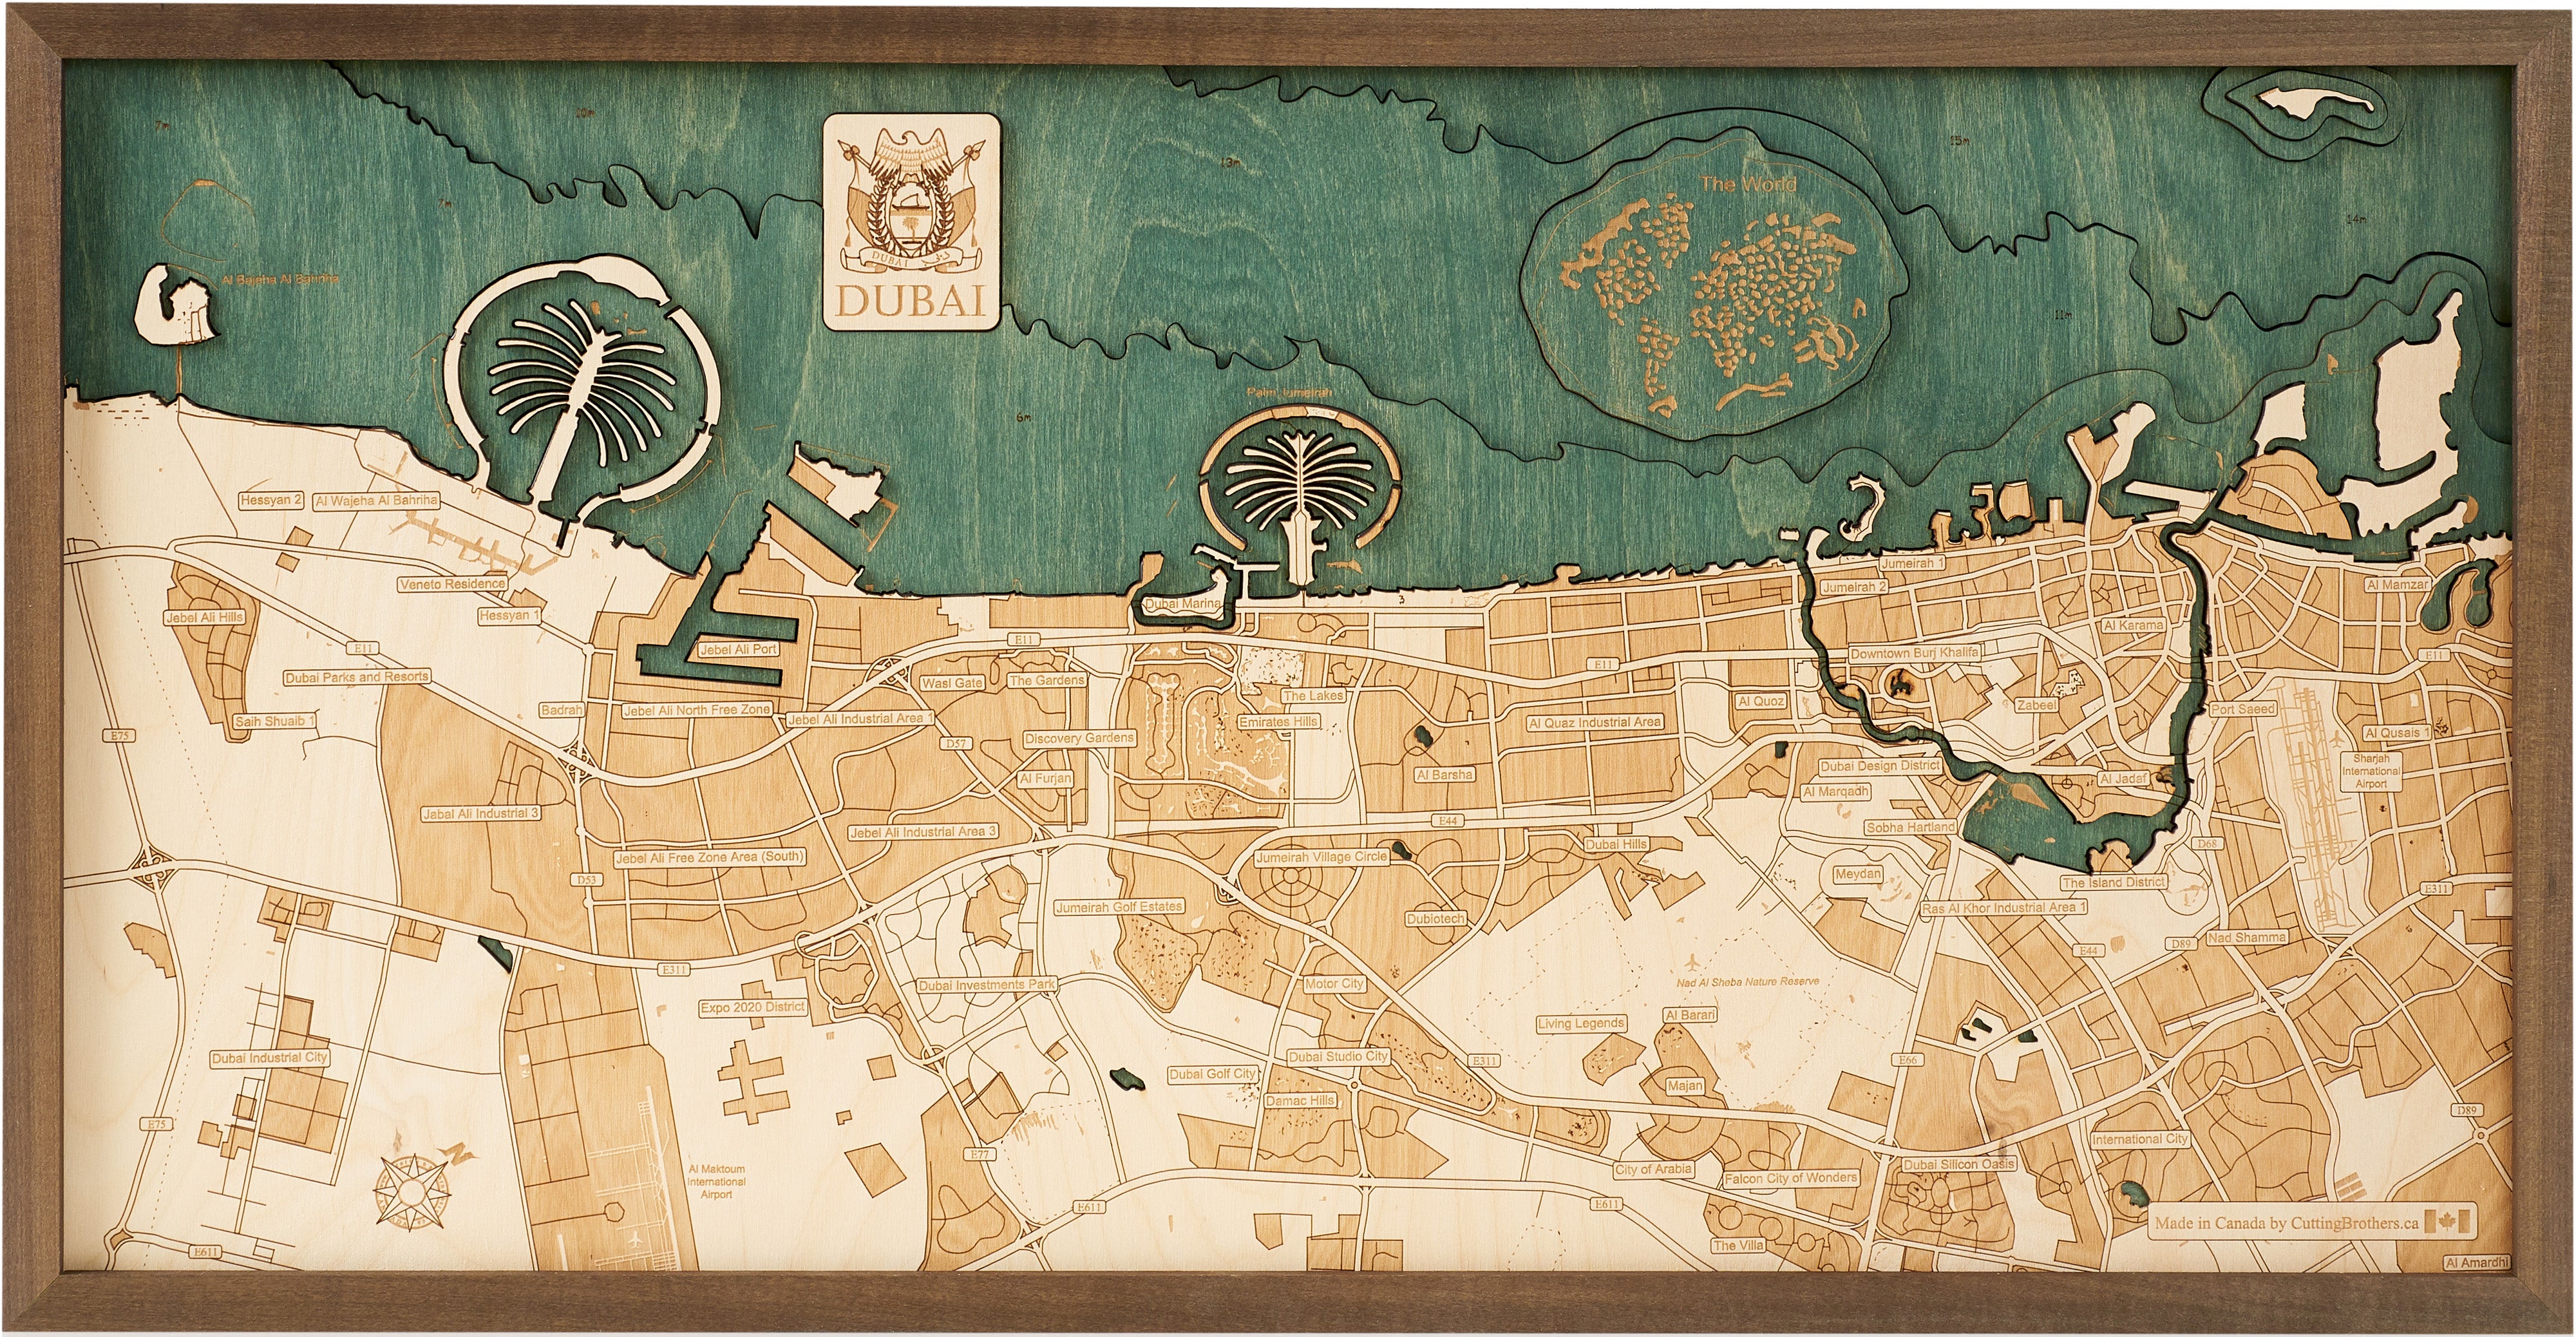 DUBAI 3D Wooden Wall Map - Version M